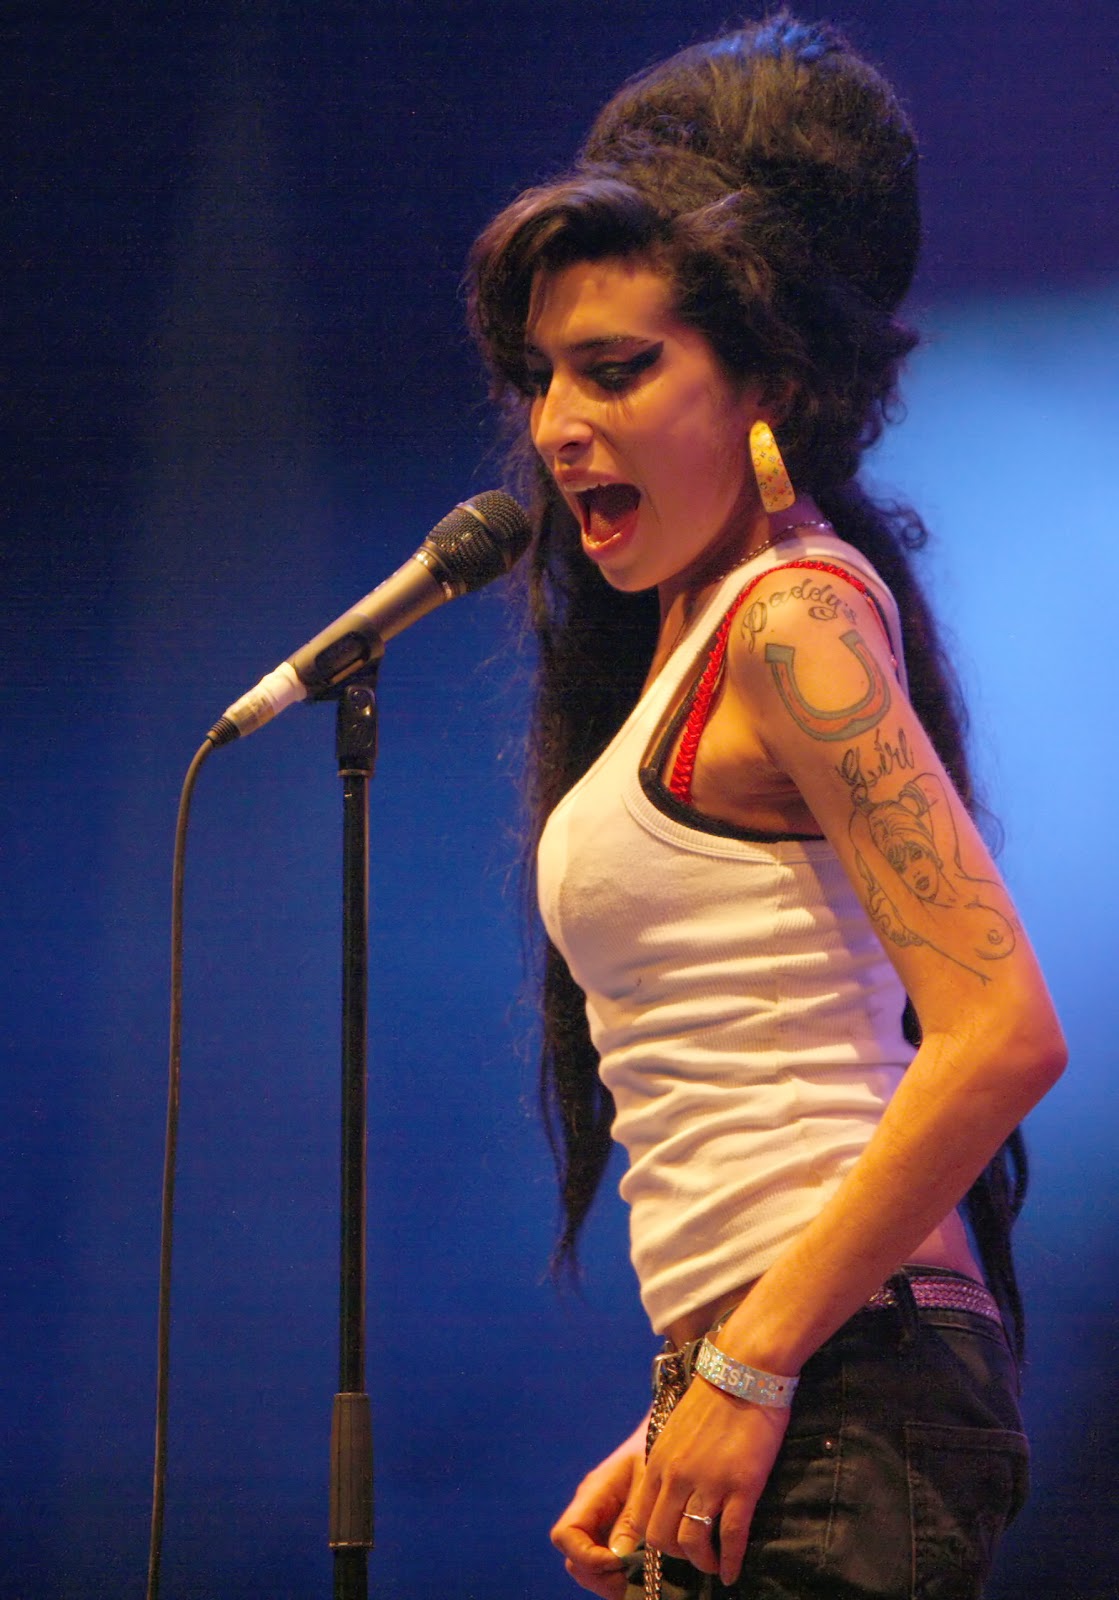 http://4.bp.blogspot.com/-otV_bed1VVA/TlVOqg4QQLI/AAAAAAAAAFU/V7fgmWKZBXM/s1600/Amy_Winehouse_wall+paper.jpg